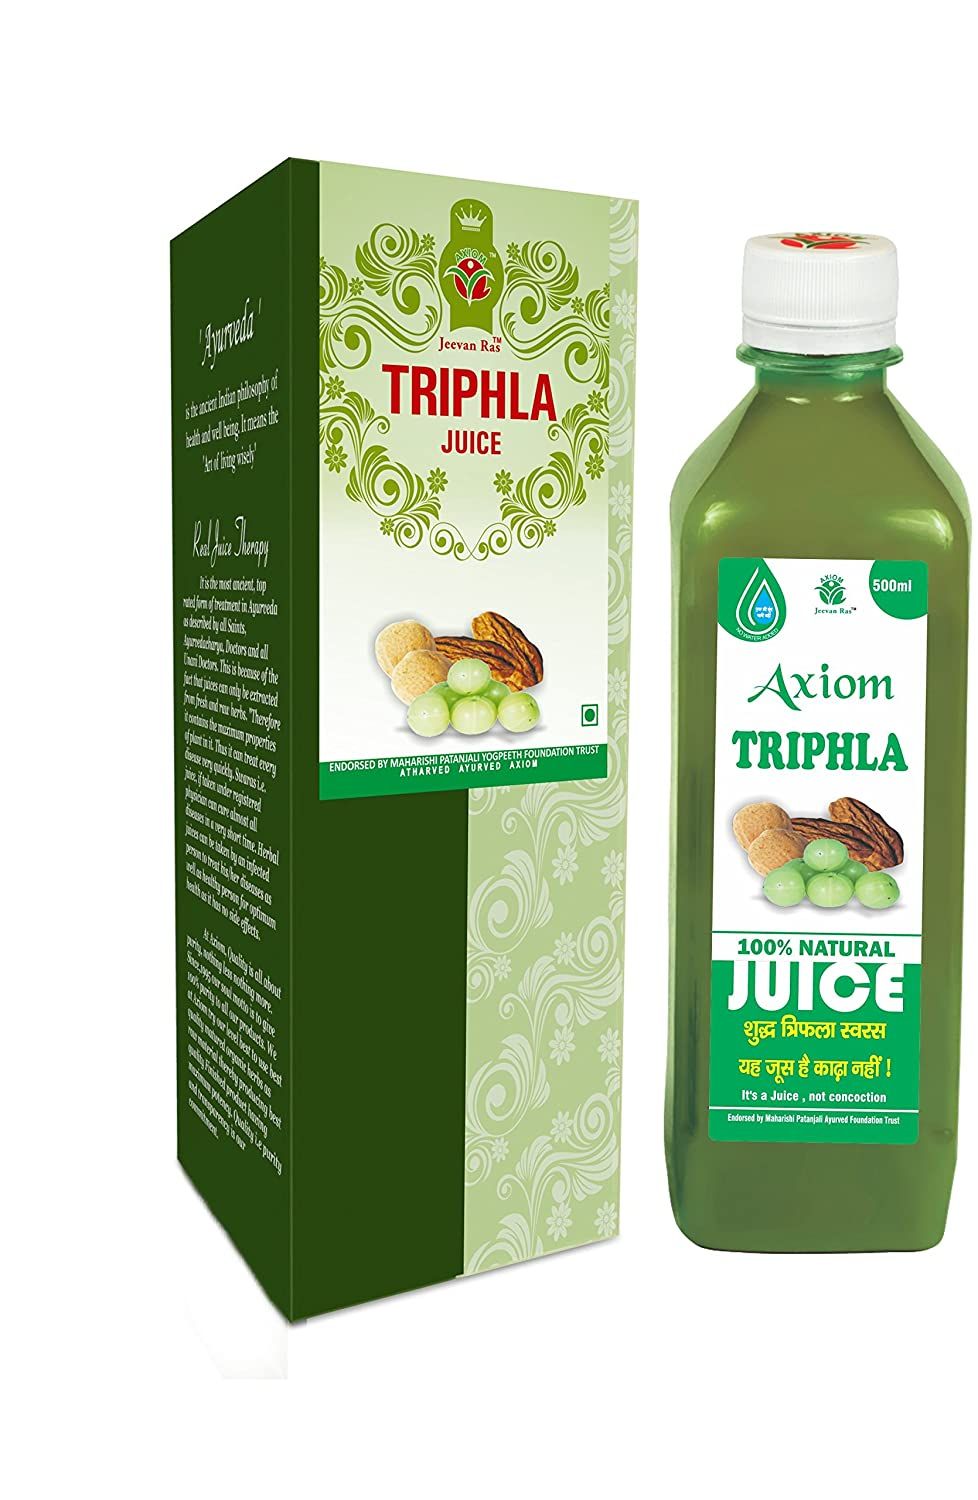 Axiom Triphla Juice Image